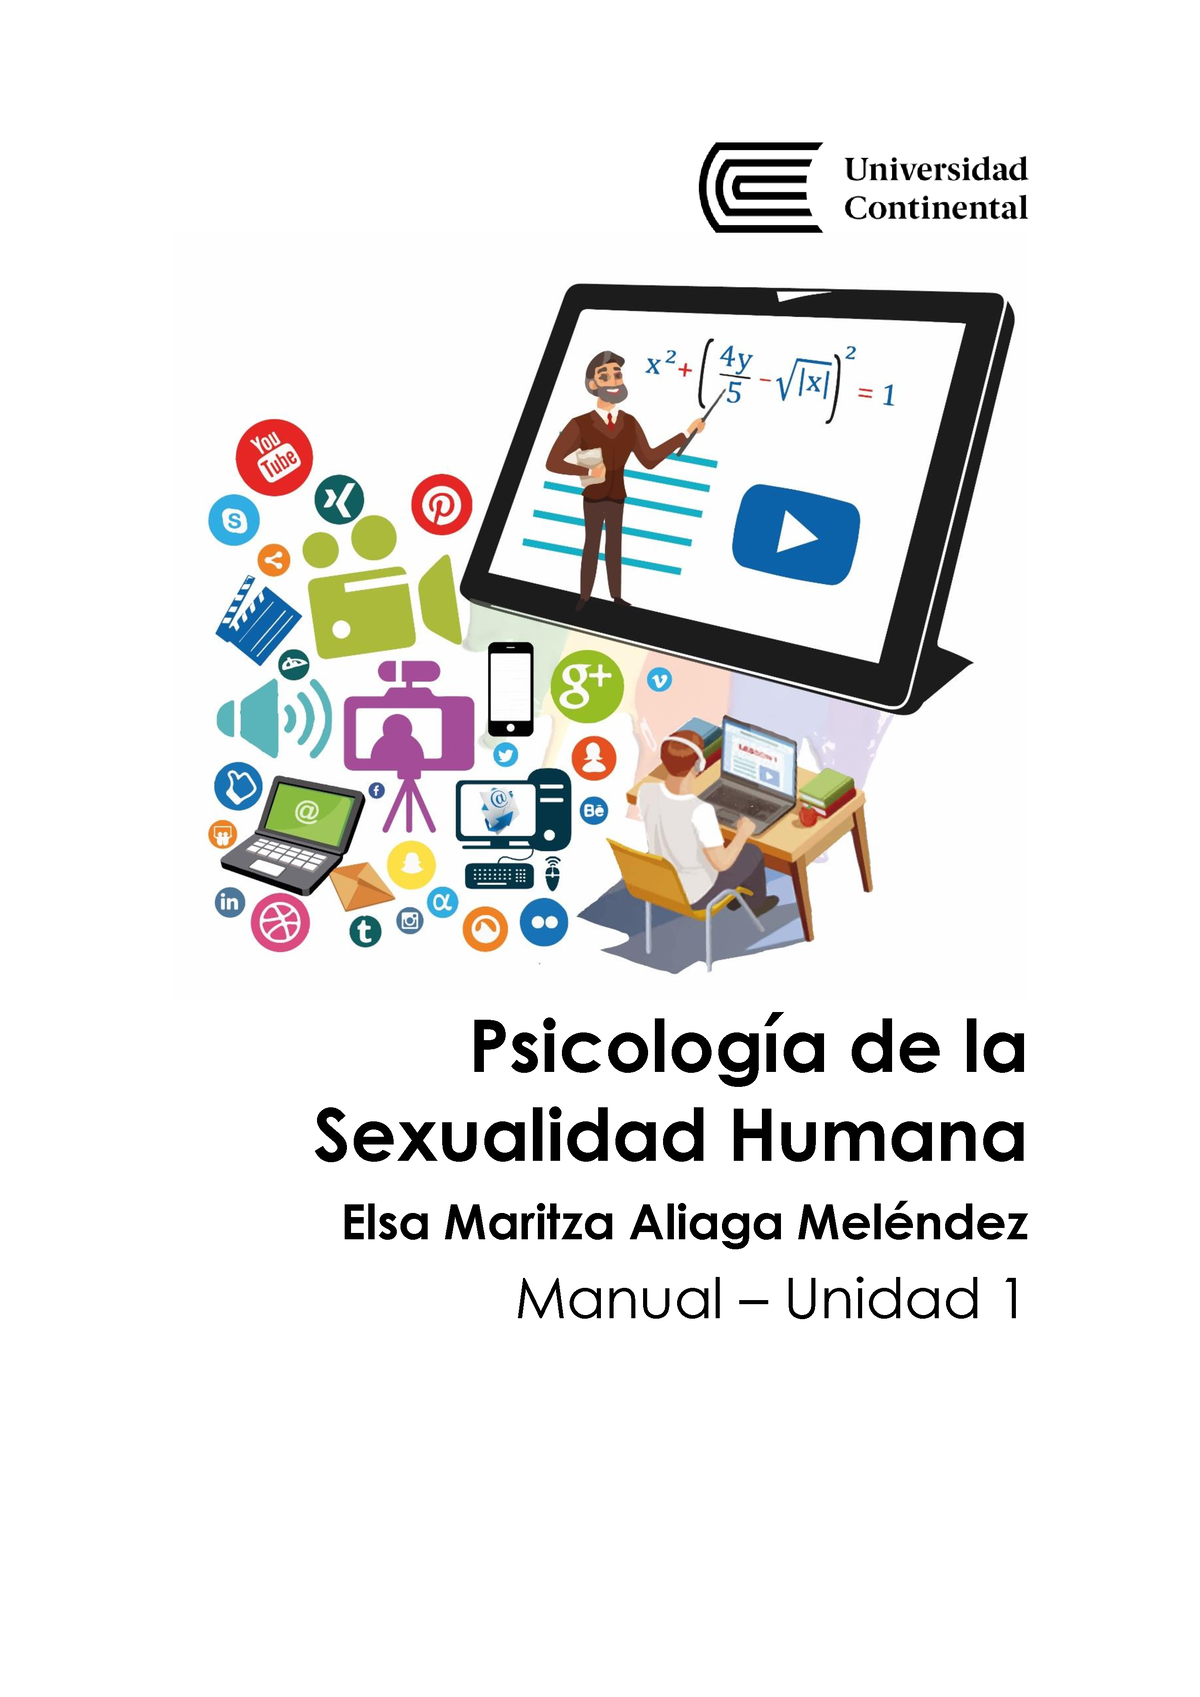 Manual Unidad 1 Psicología De La Sexualidad Humana Psicología De La Sexualidad Humana Elsa 0632